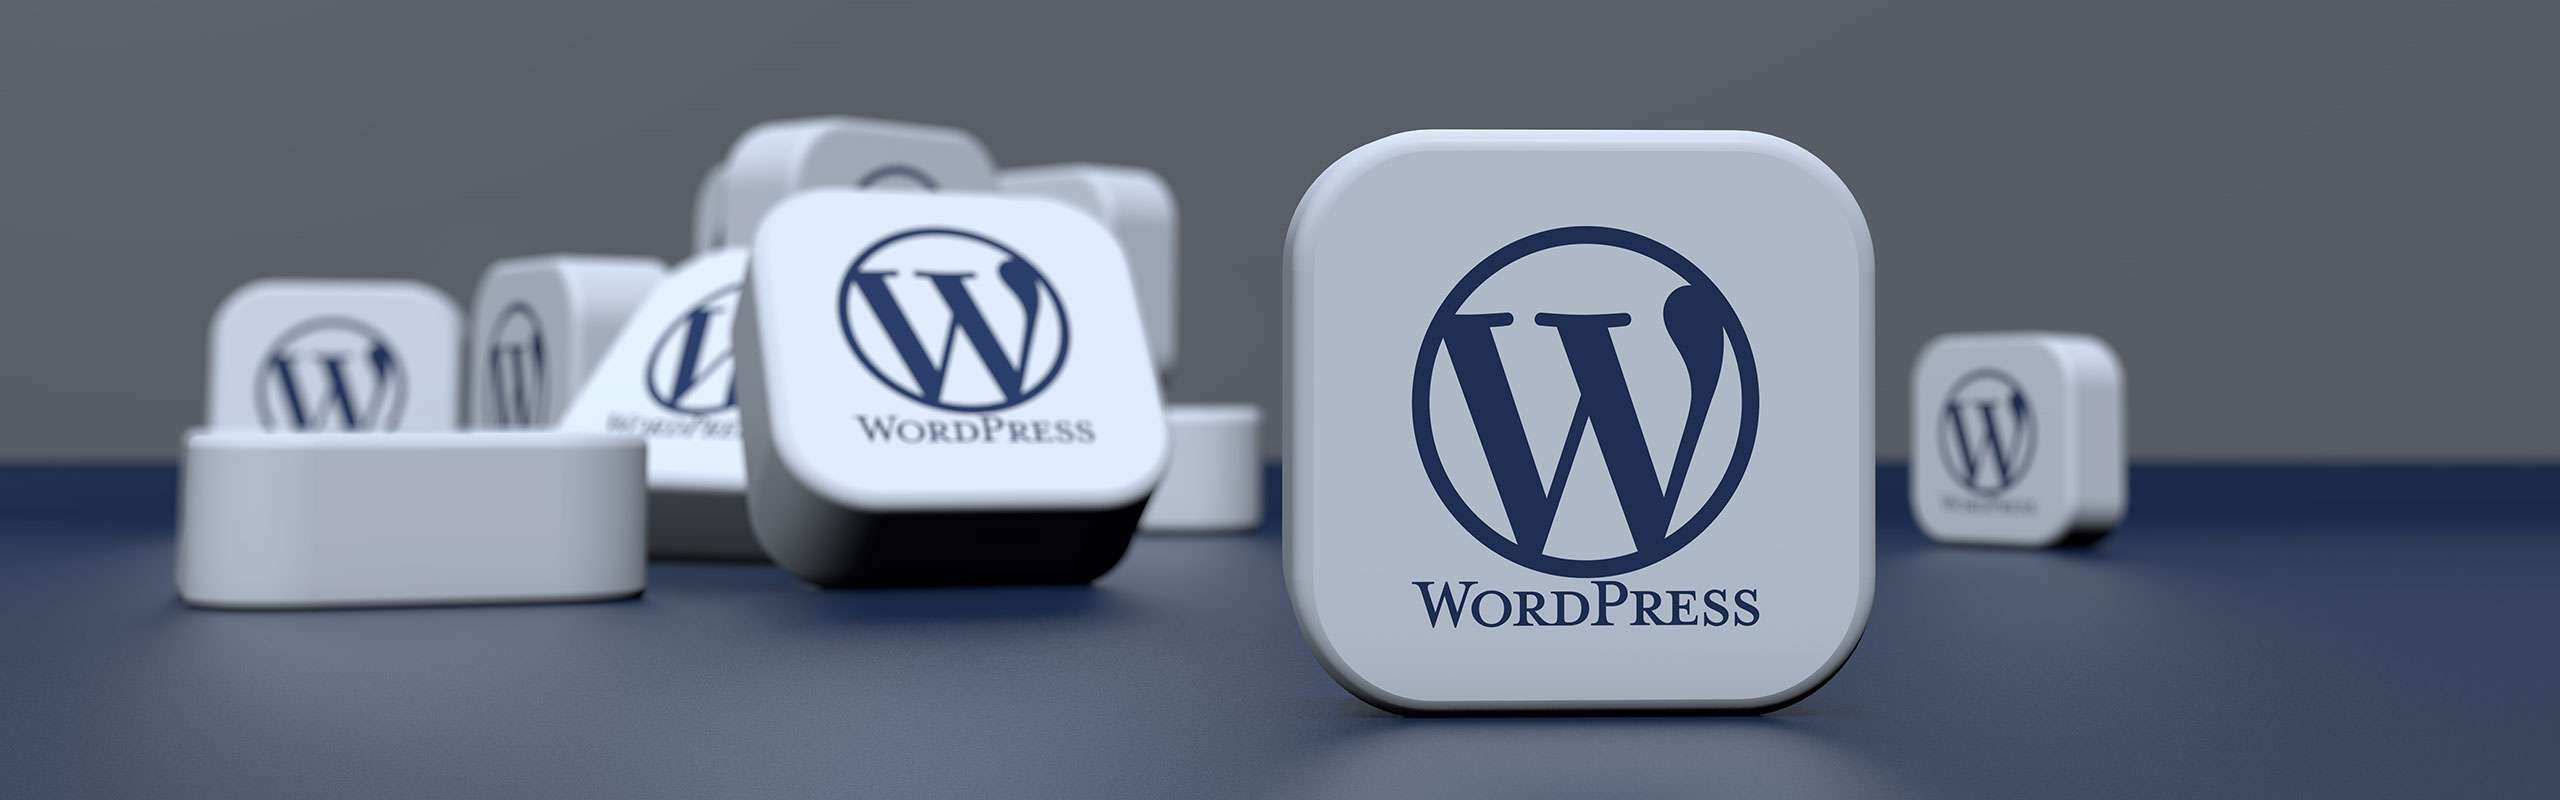 Understanding WordPress: A Comprehensive Overview Understanding WordPress: A Comprehensive Overview Understanding WordPress: A Comprehensive Overview